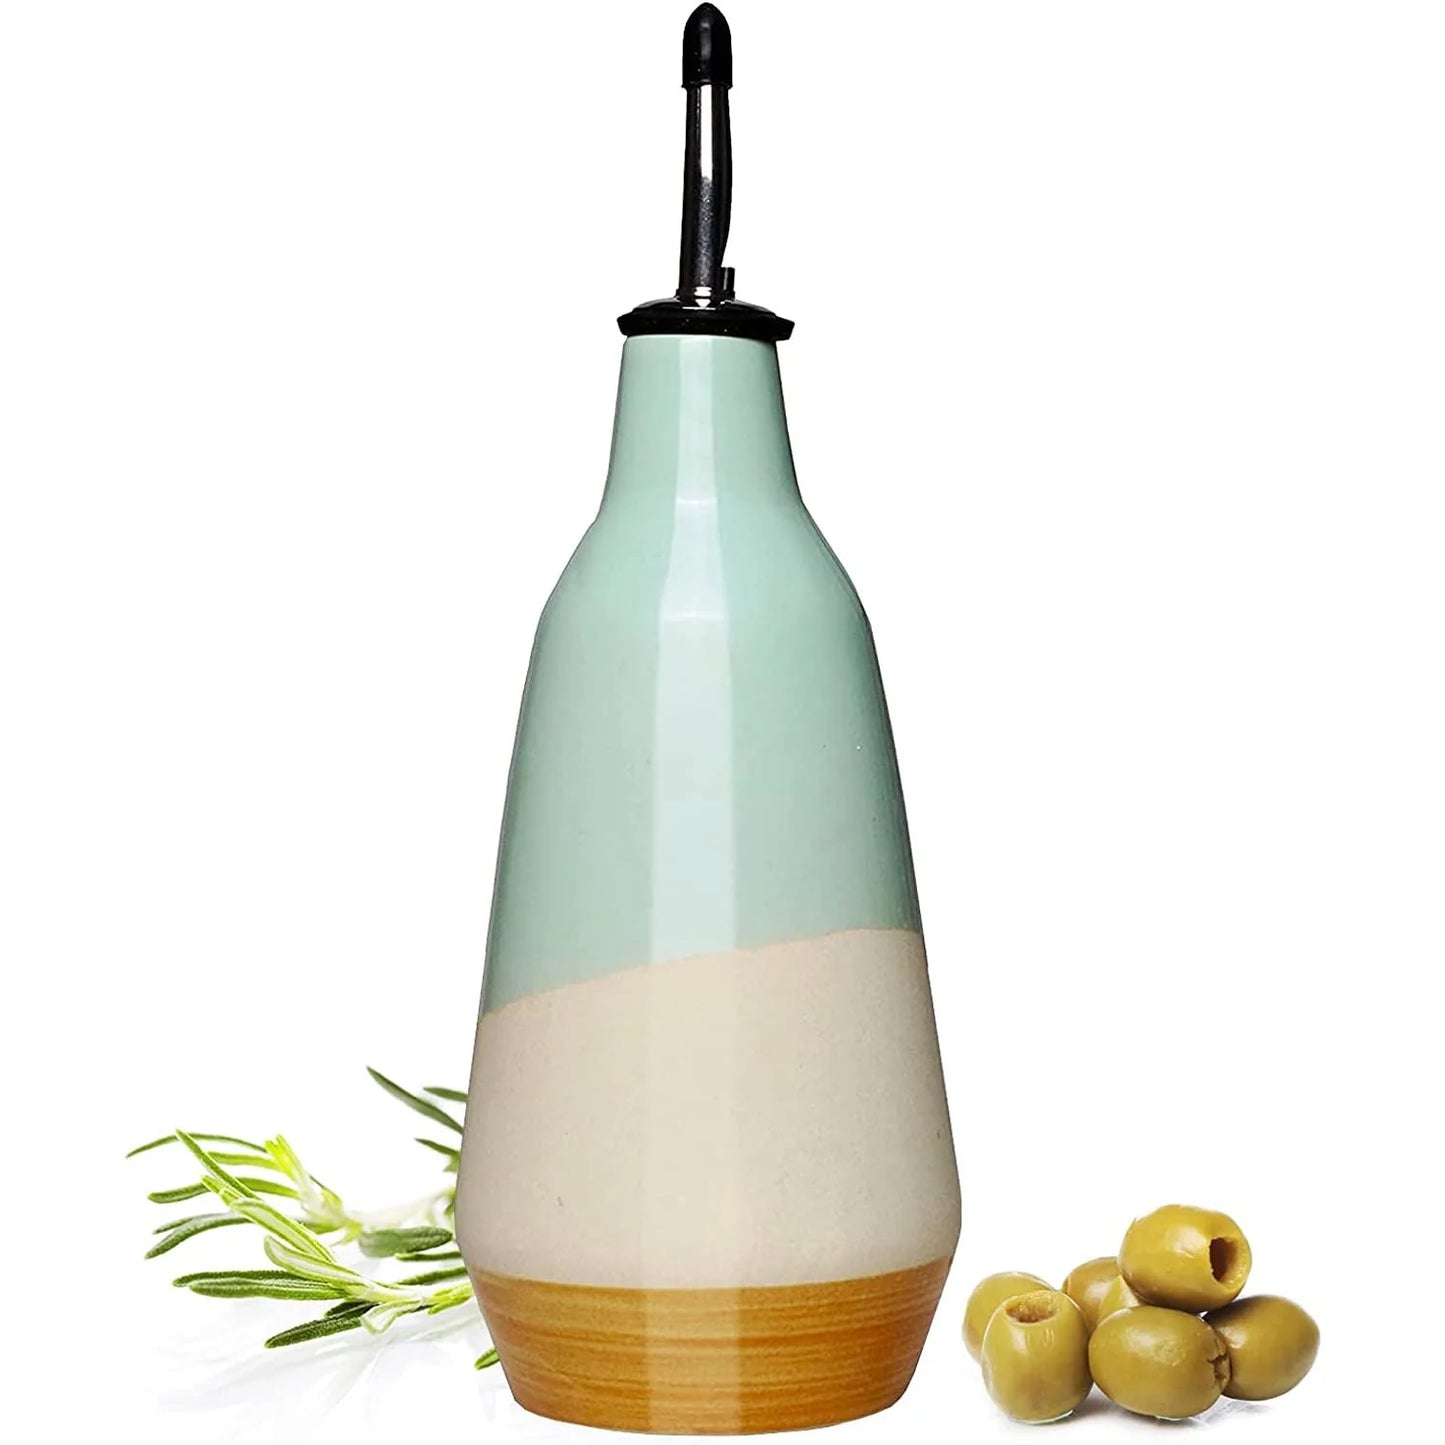 
                  
                    Handmade Ceramic Olive Oil Dispenser
                  
                